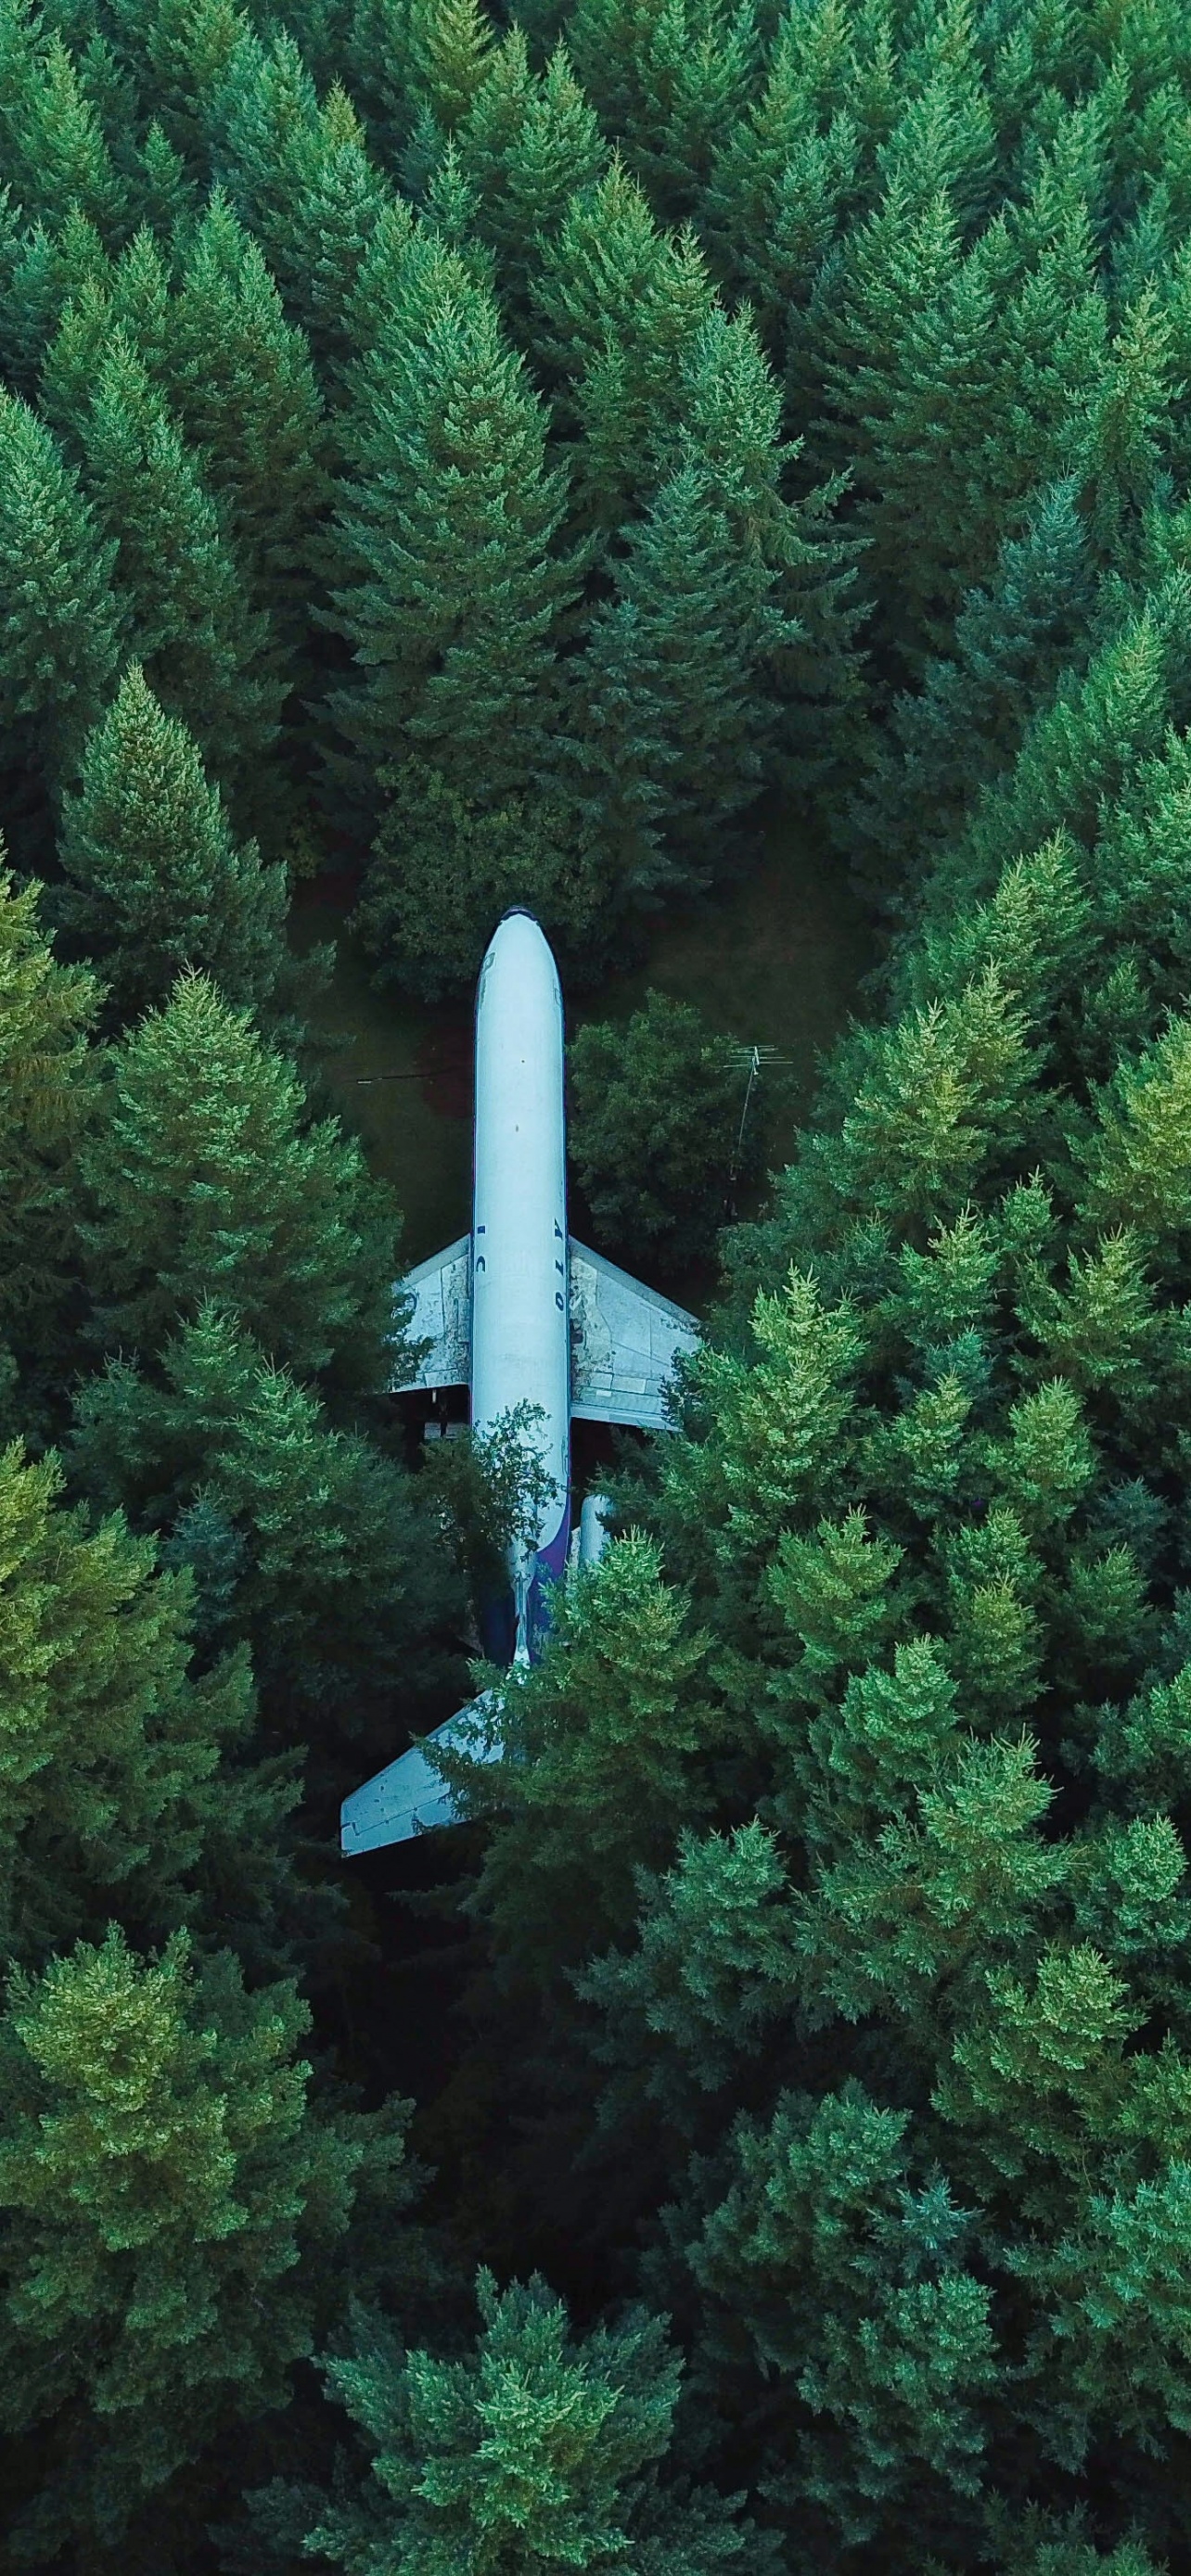 Cảnh chiếc máy bay với không gian xanh mát và tuyến đường xuyên qua những khu rừng phía dưới tạo nên một bức ảnh rất đặc biệt và độc đáo. Không chỉ vậy, những gam màu xanh còn mang đến cho người xem cảm giác yên bình và thư giãn. Hãy xem ngay hình ảnh và cảm nhận nhé!